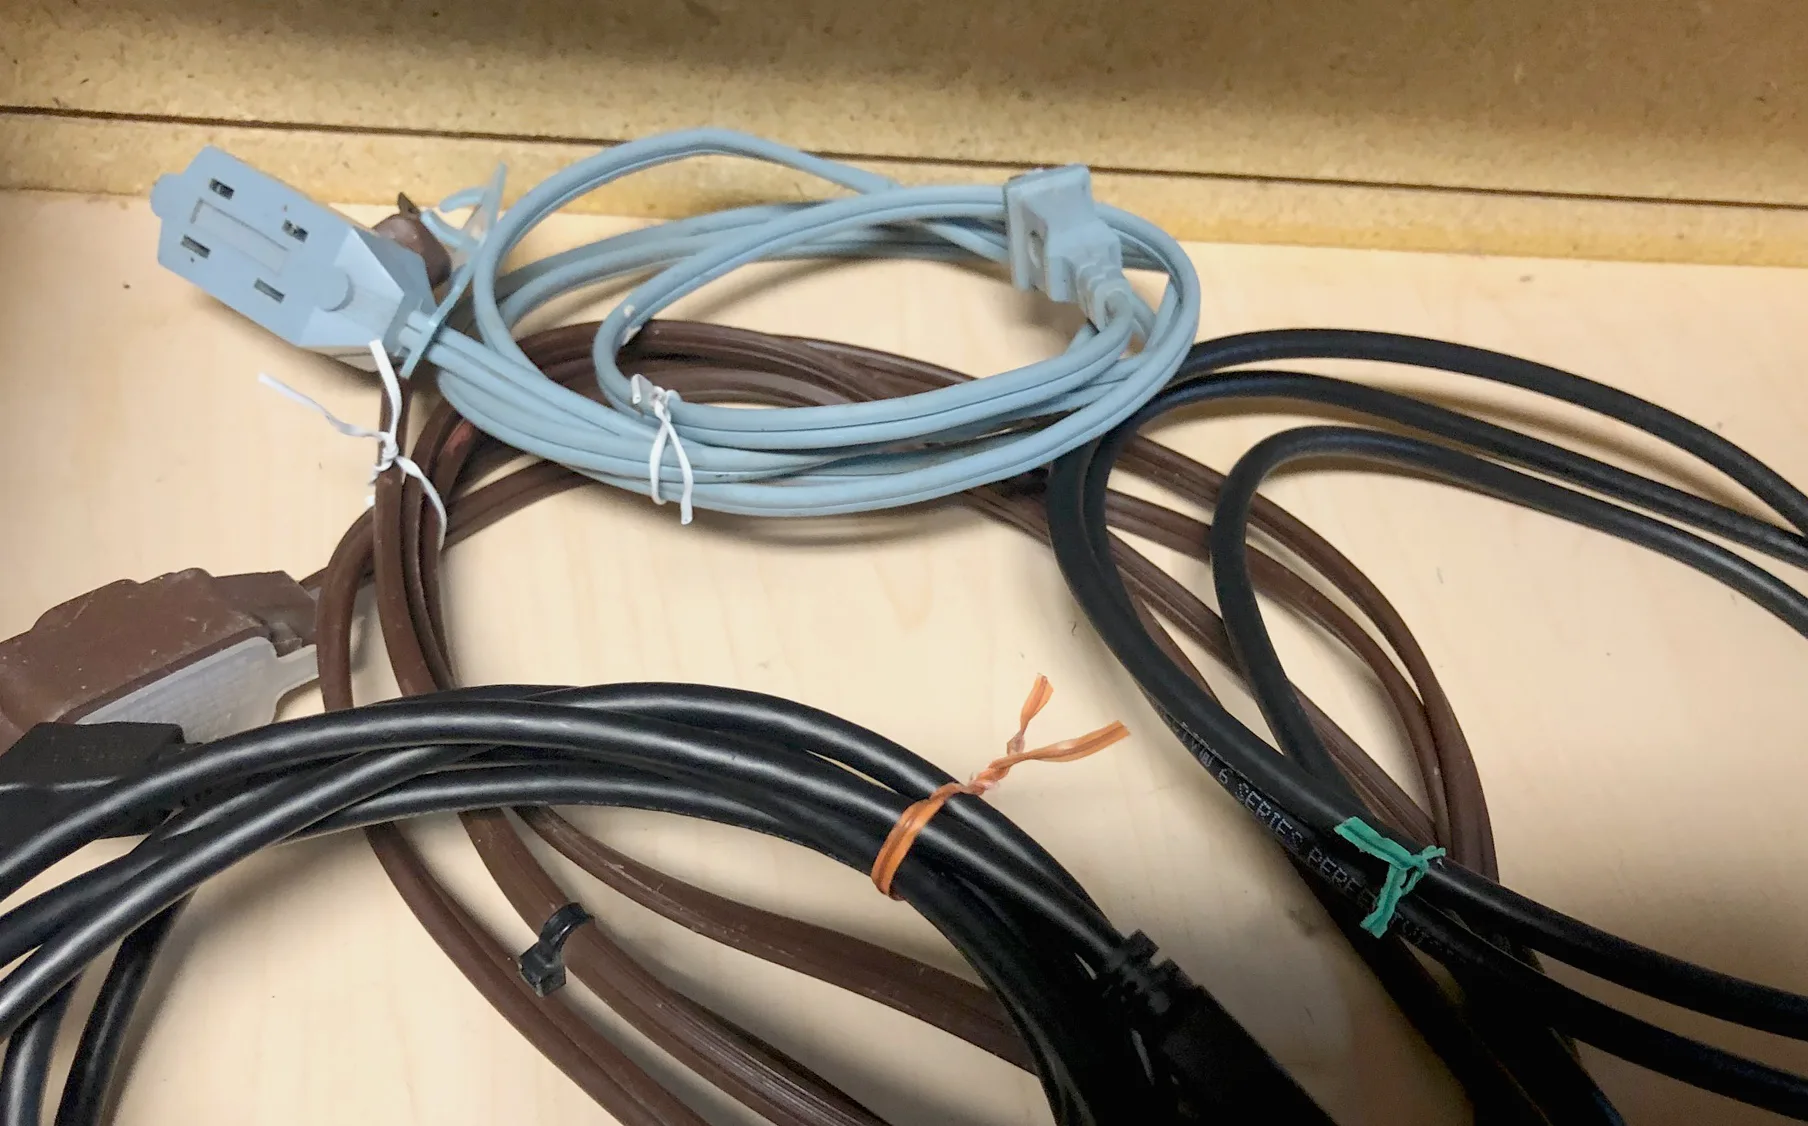 Various colored twist ties act as cord ties